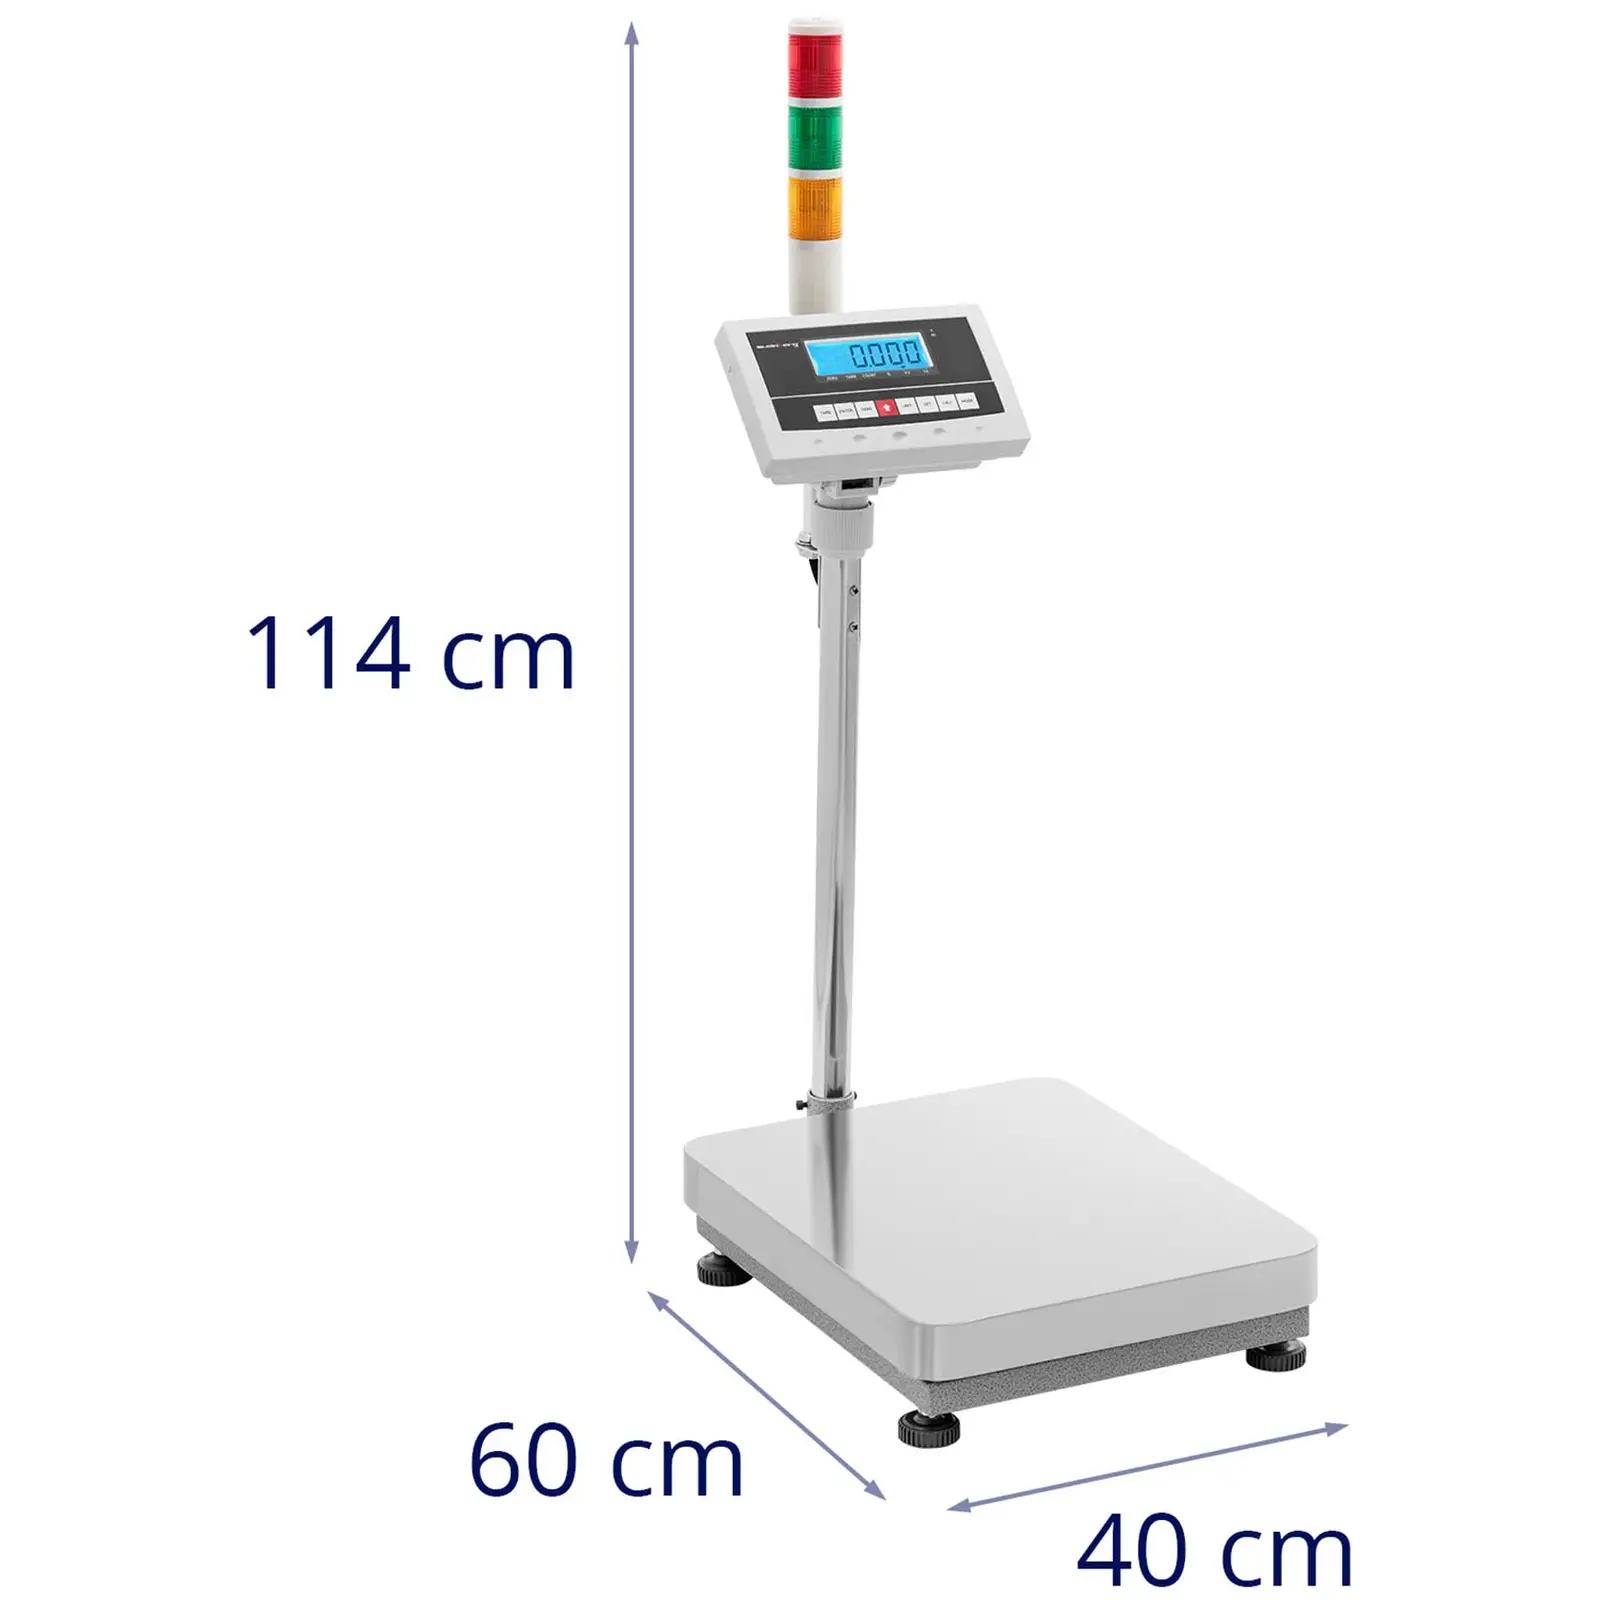 Platform Scale - Warning light - 60 kg / 0.002 kg - 400 x 500 x 122 mm - kg / lb